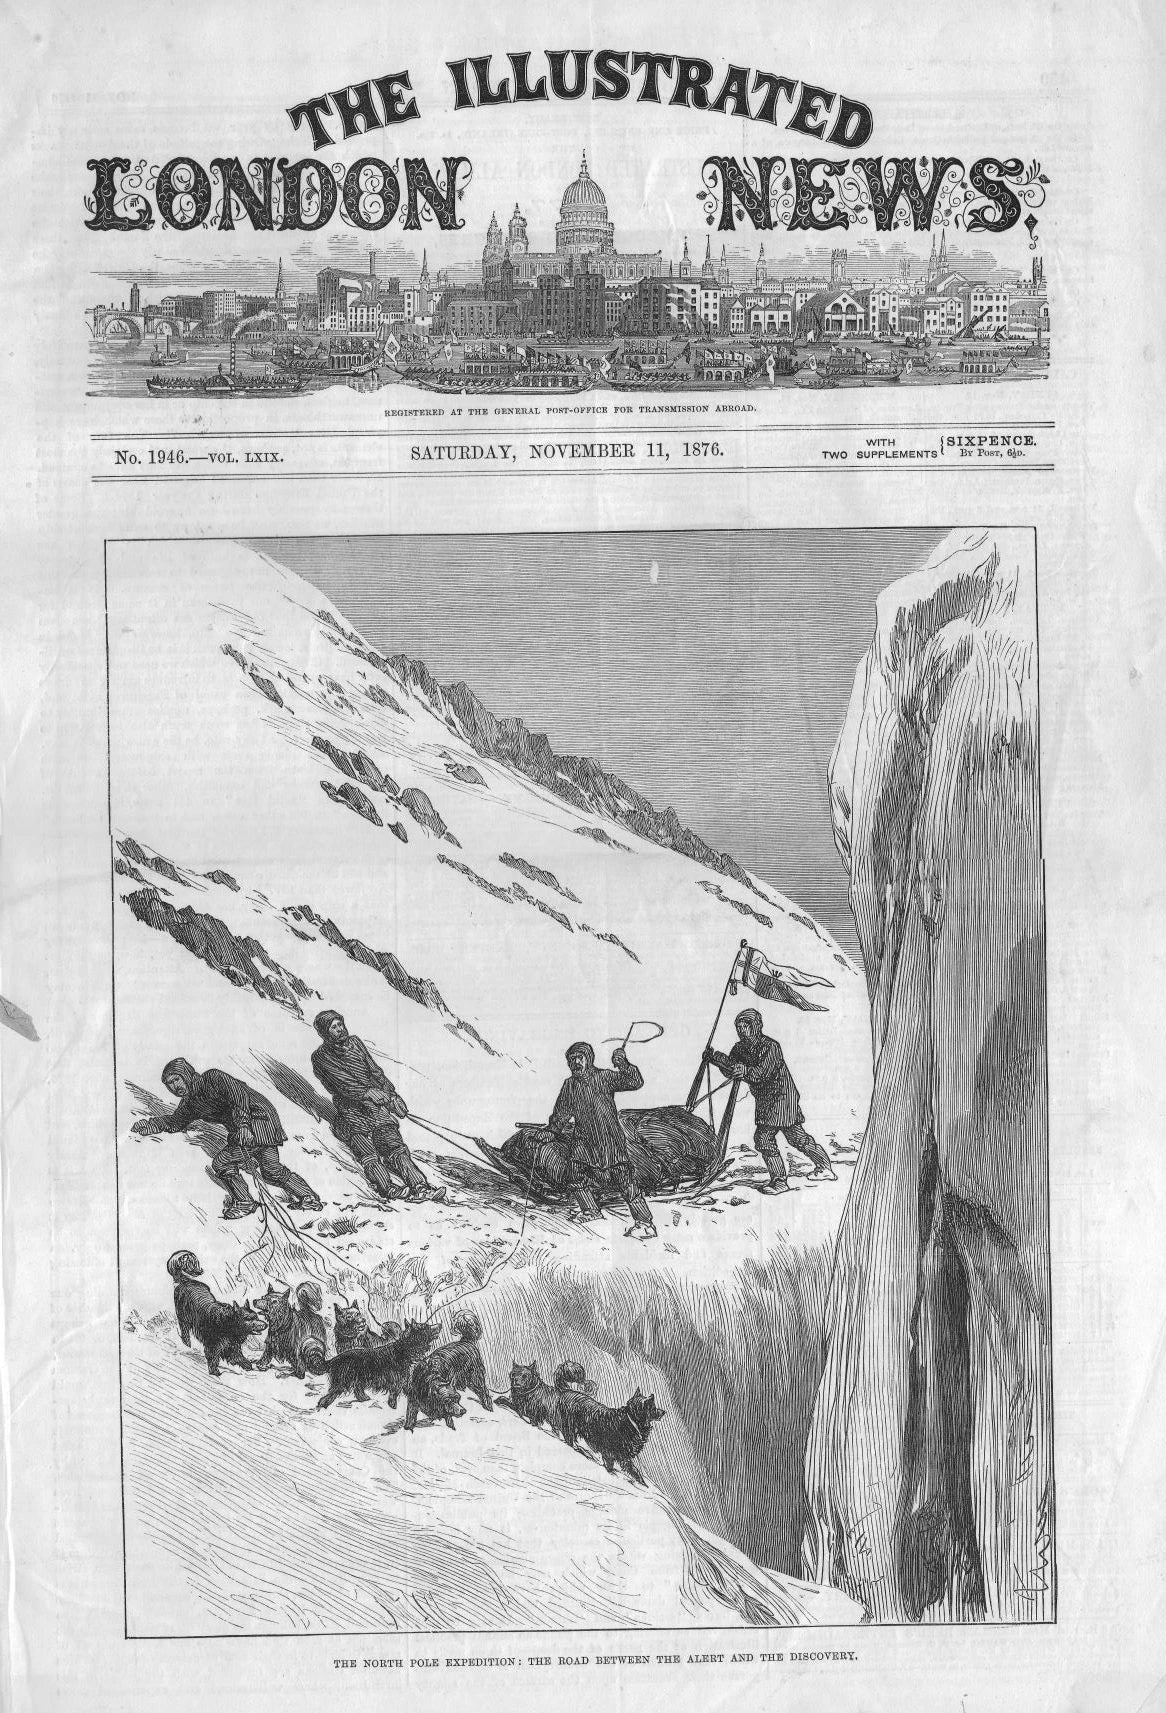 Arctic Prints